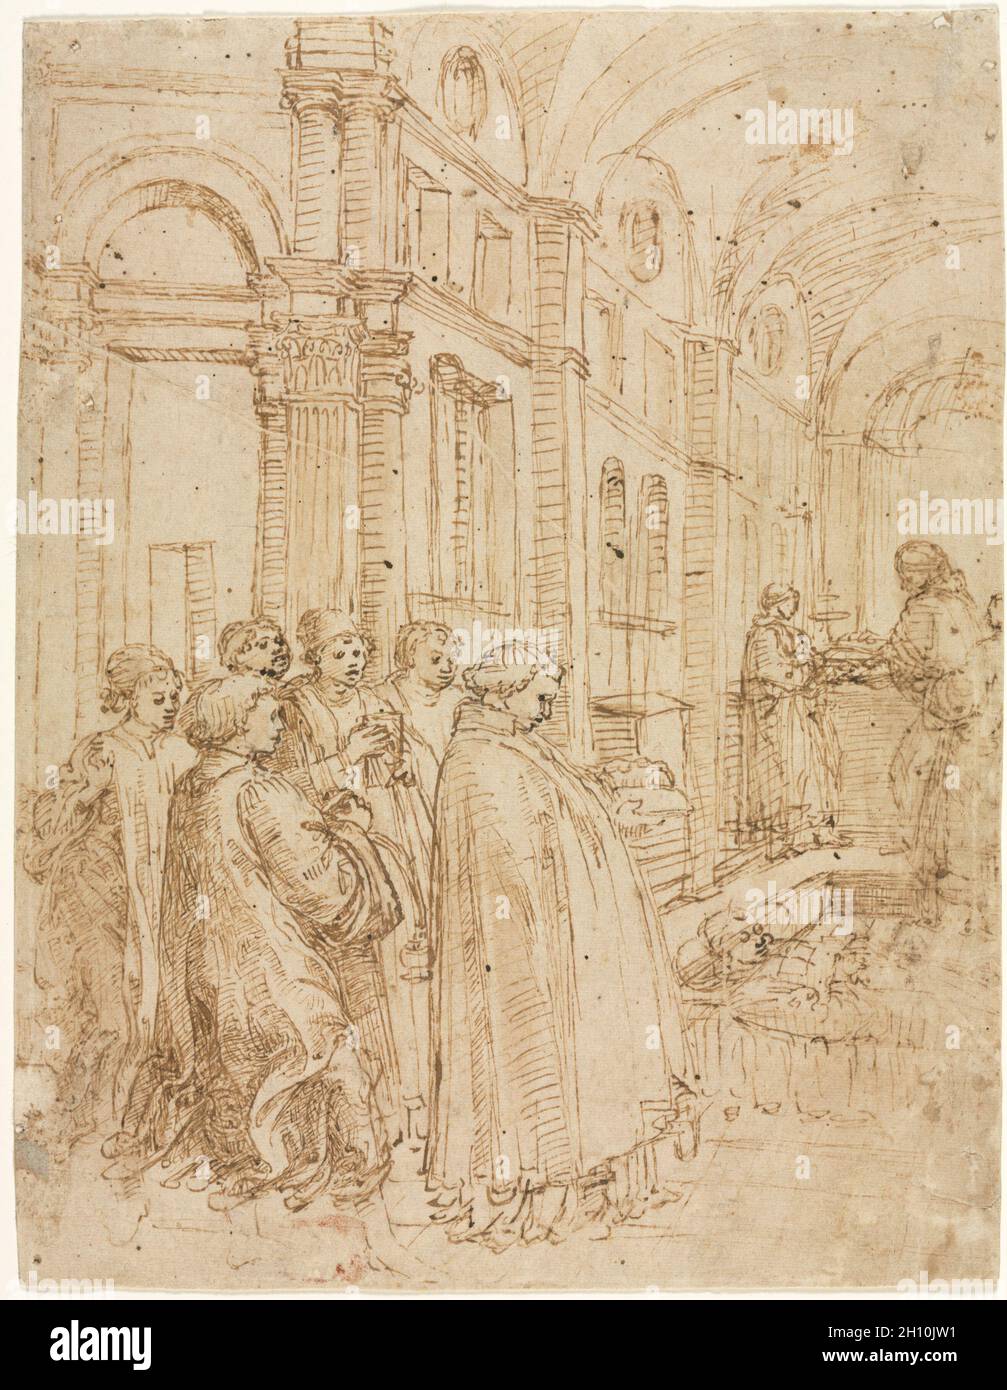 Le funéraire de Saint Stephen, c.1460. Filippo Lippi (italien, c.1406-1469).Stylo et encre brune avec brosse et lavage brun avec traces de stylet sur traces de craie noire; feuille: 24.9 x 19.3 cm (9 13/16 x 7 5/8 po.); support secondaire: 24.9 x 19.3 cm (9 13/16 x 7 5/8 po.). Banque D'Images